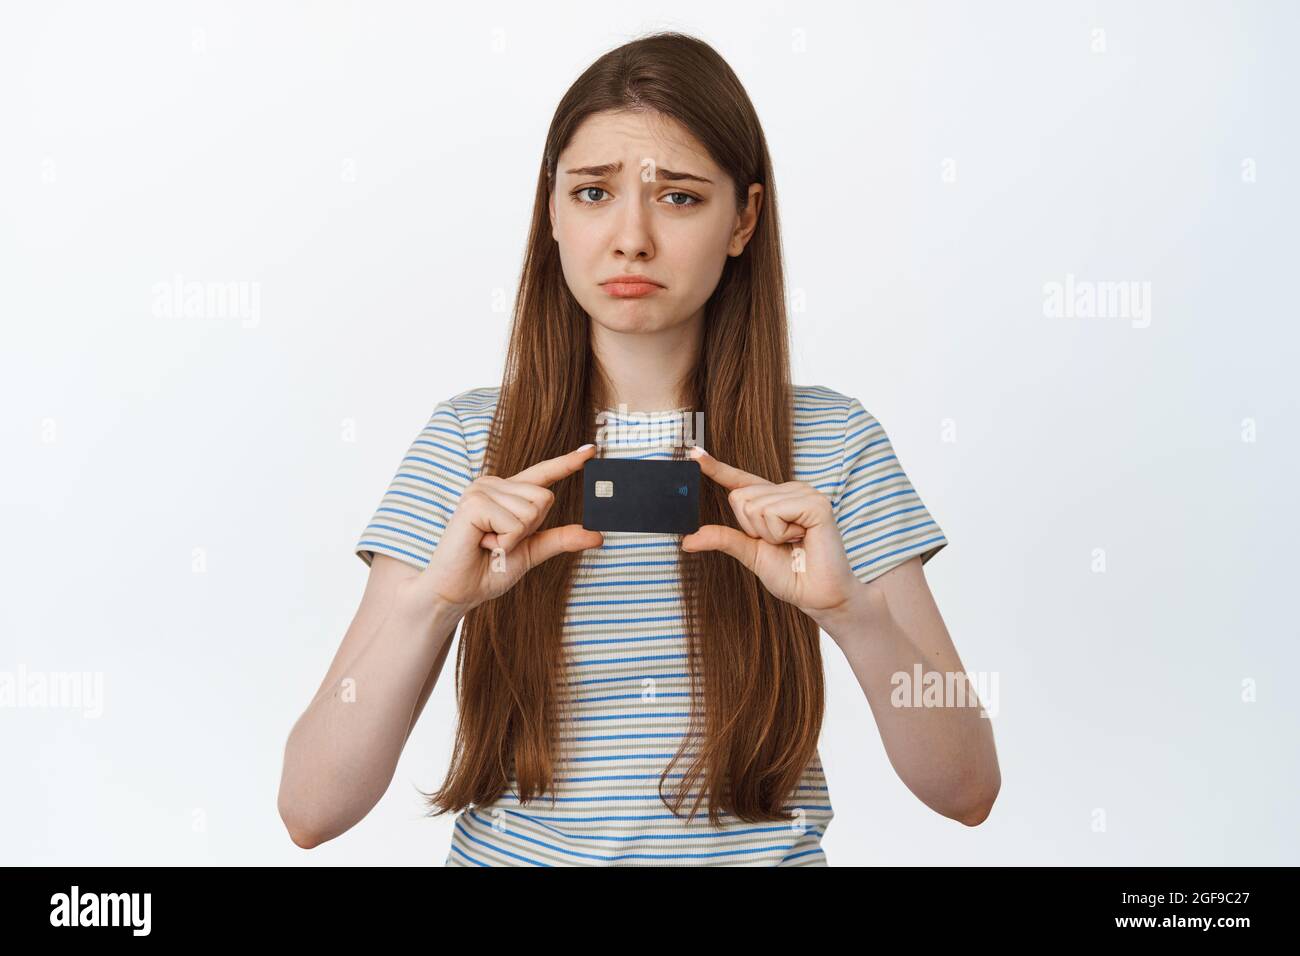 Traurige Frau zeigt Kreditkarte, Pouts und Stirnrunzeln enttäuscht, steht vor weißem Hintergrund Stockfoto